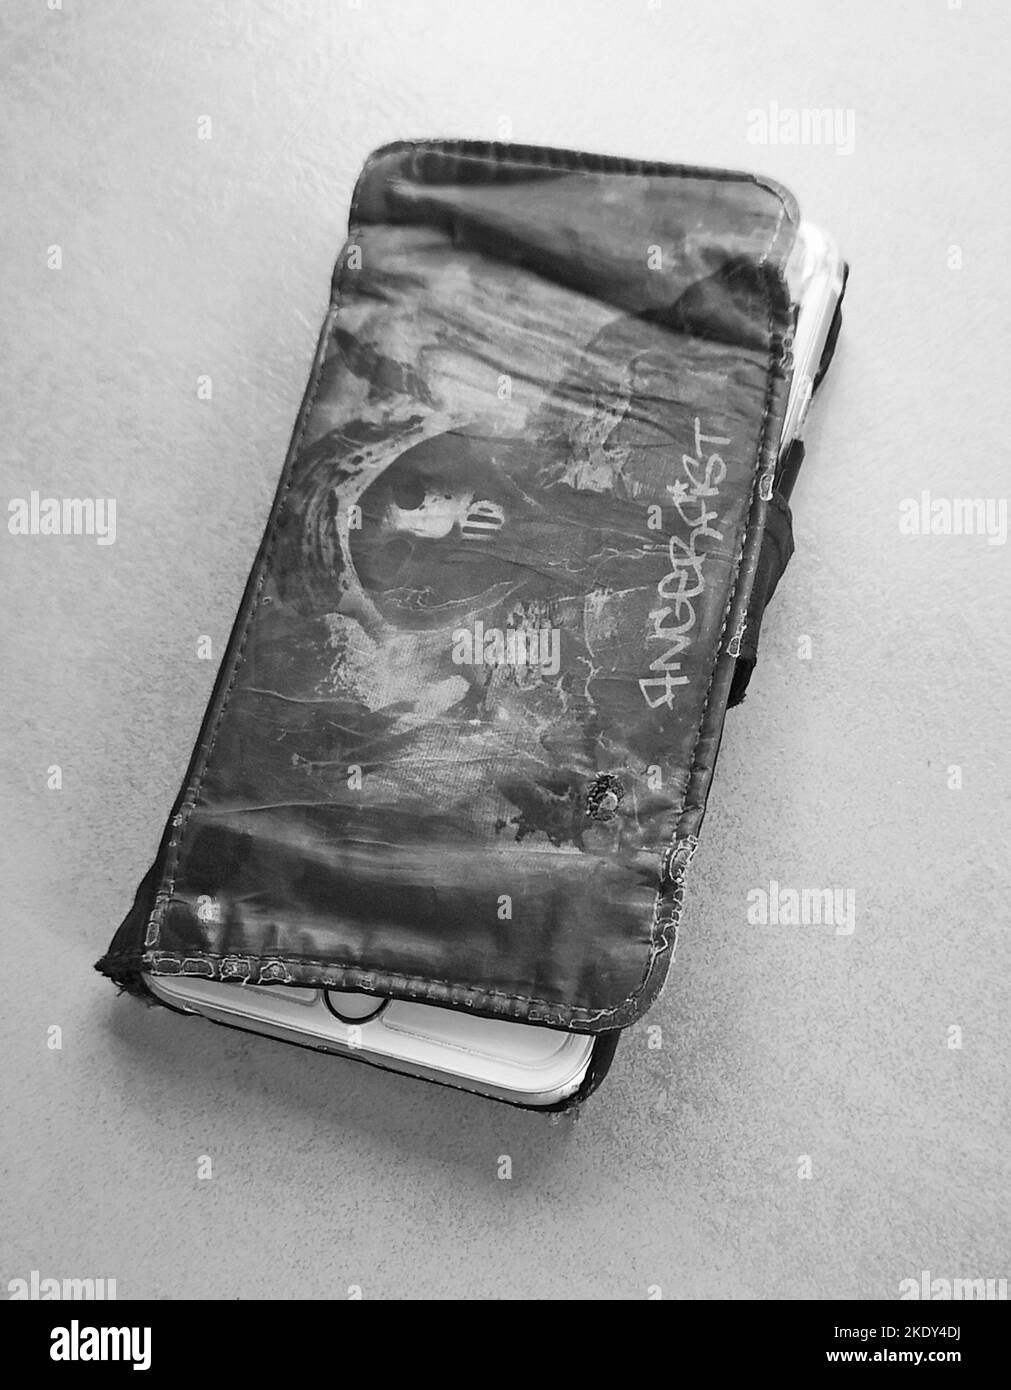 Usato Phone case, Stark gebrauchte Handyhuelle schwarzweiss bianco e nero Foto Stock